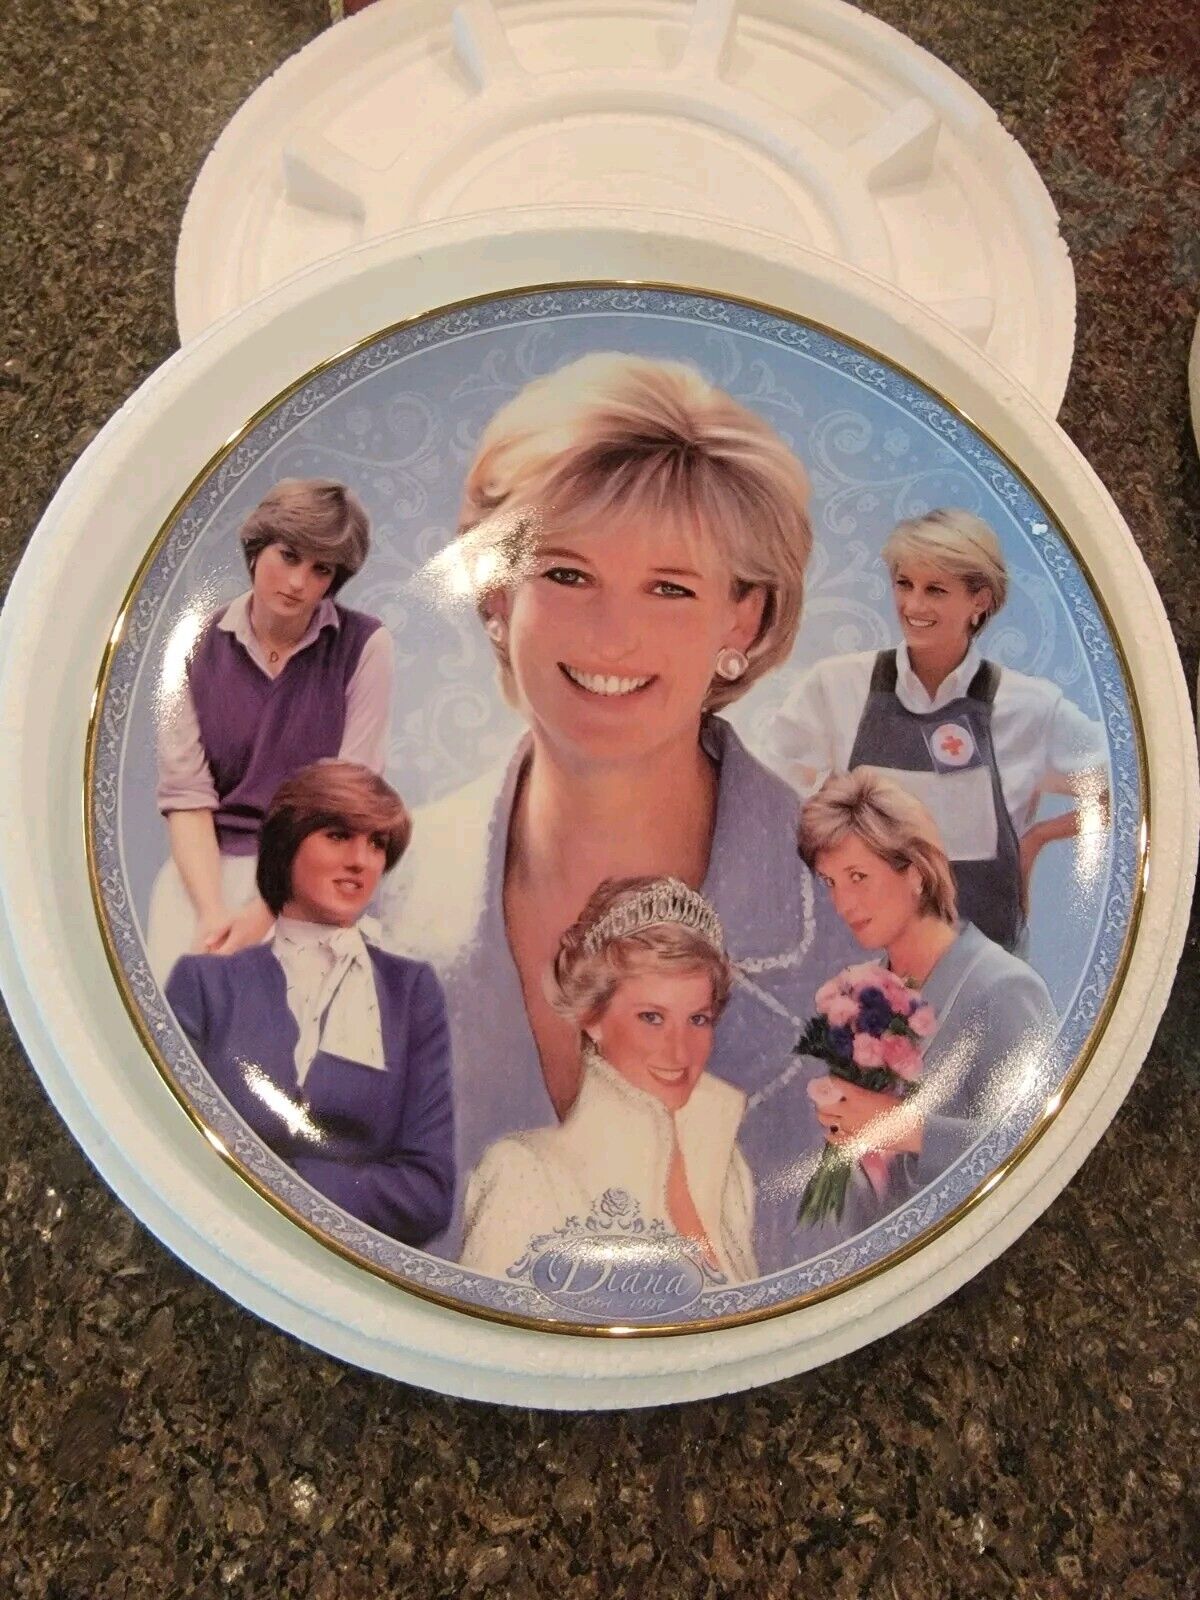 Princess Diana - 'The People's Princess' Danbury Mint Memorial Plate 